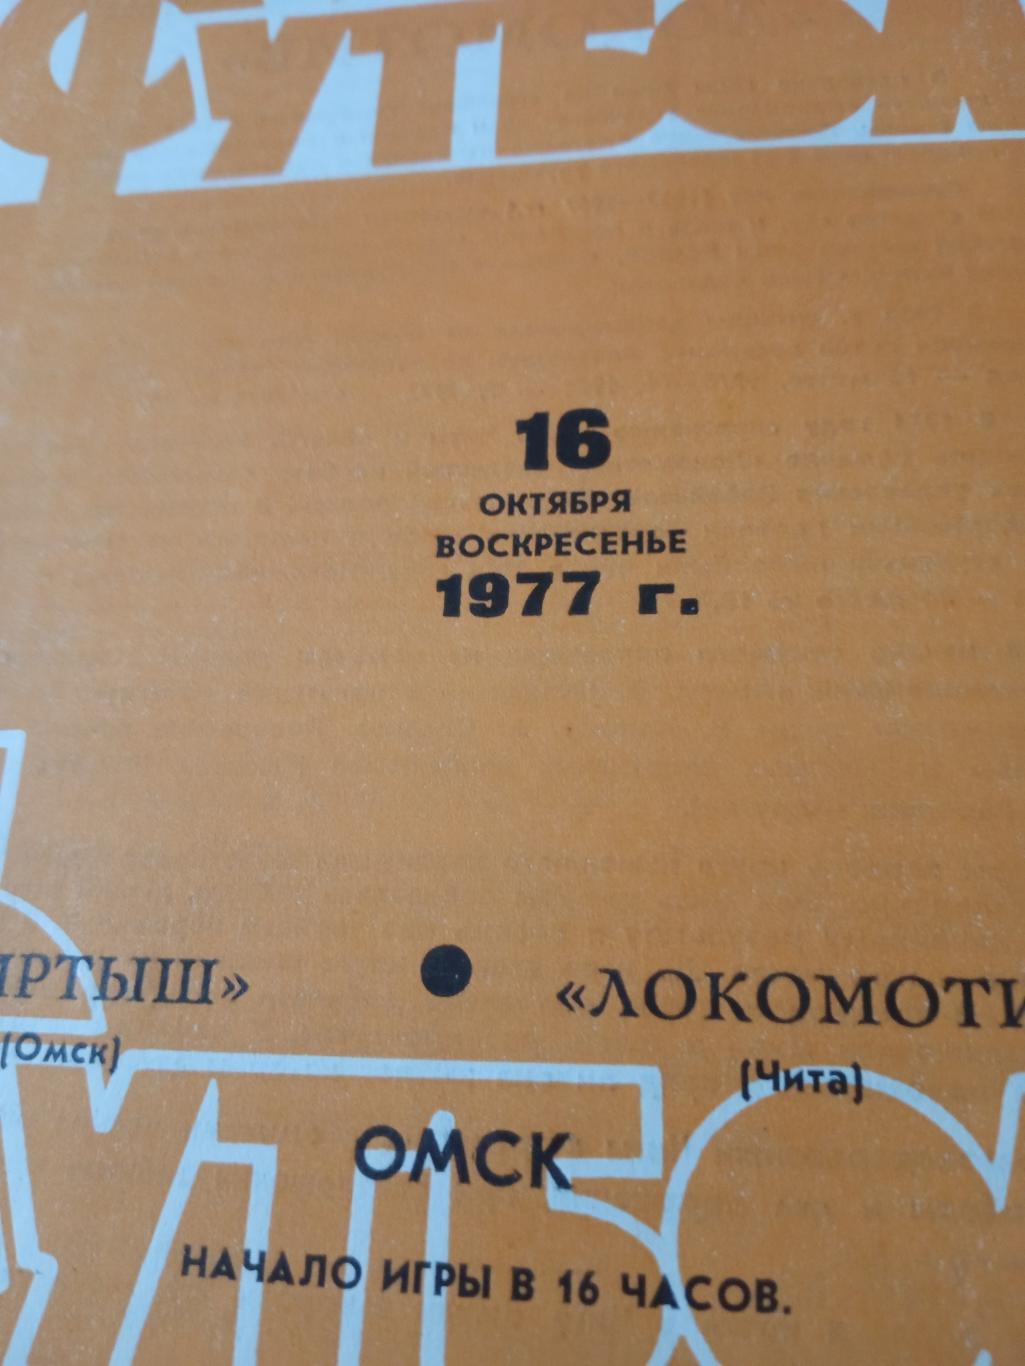 Иртыш Омск - Локомотив Чита. 16 октября 1977 год